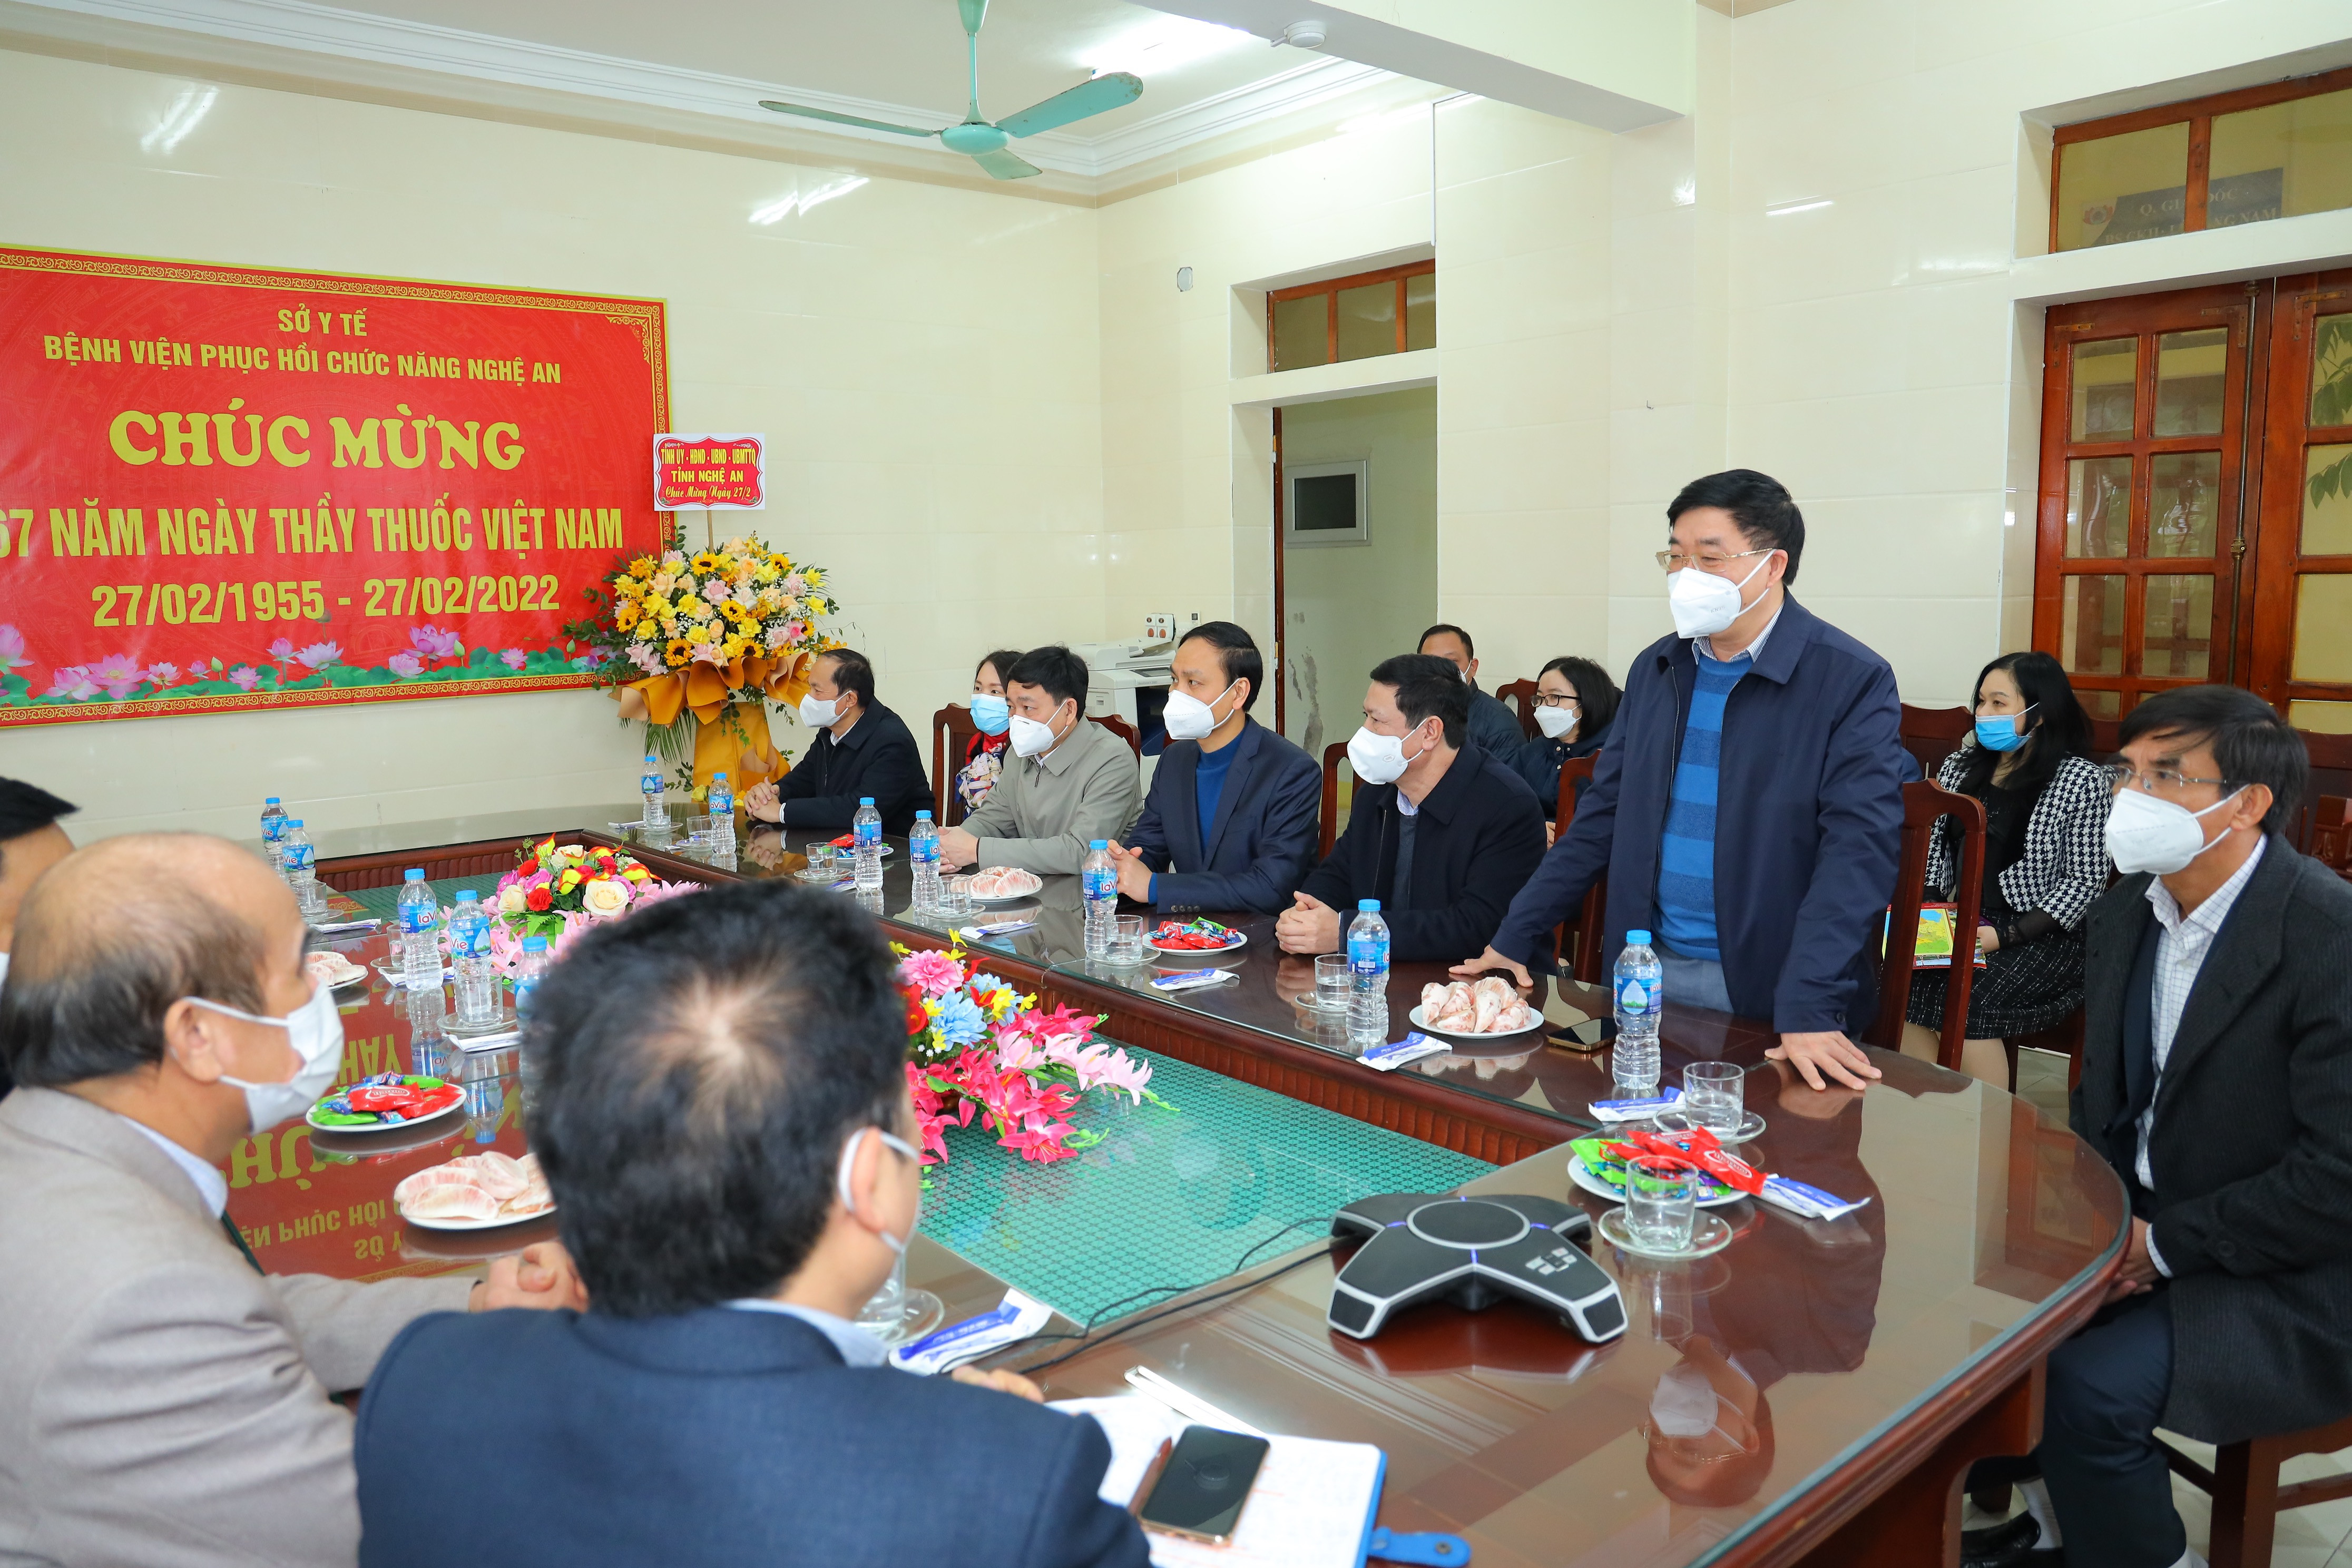 Đồng chí Nguyễn Văn Thông ghi nhận những đóng góp của Bệnh viện phục hồi chức năng Nghệ An. Ảnh Nguyên Sơn